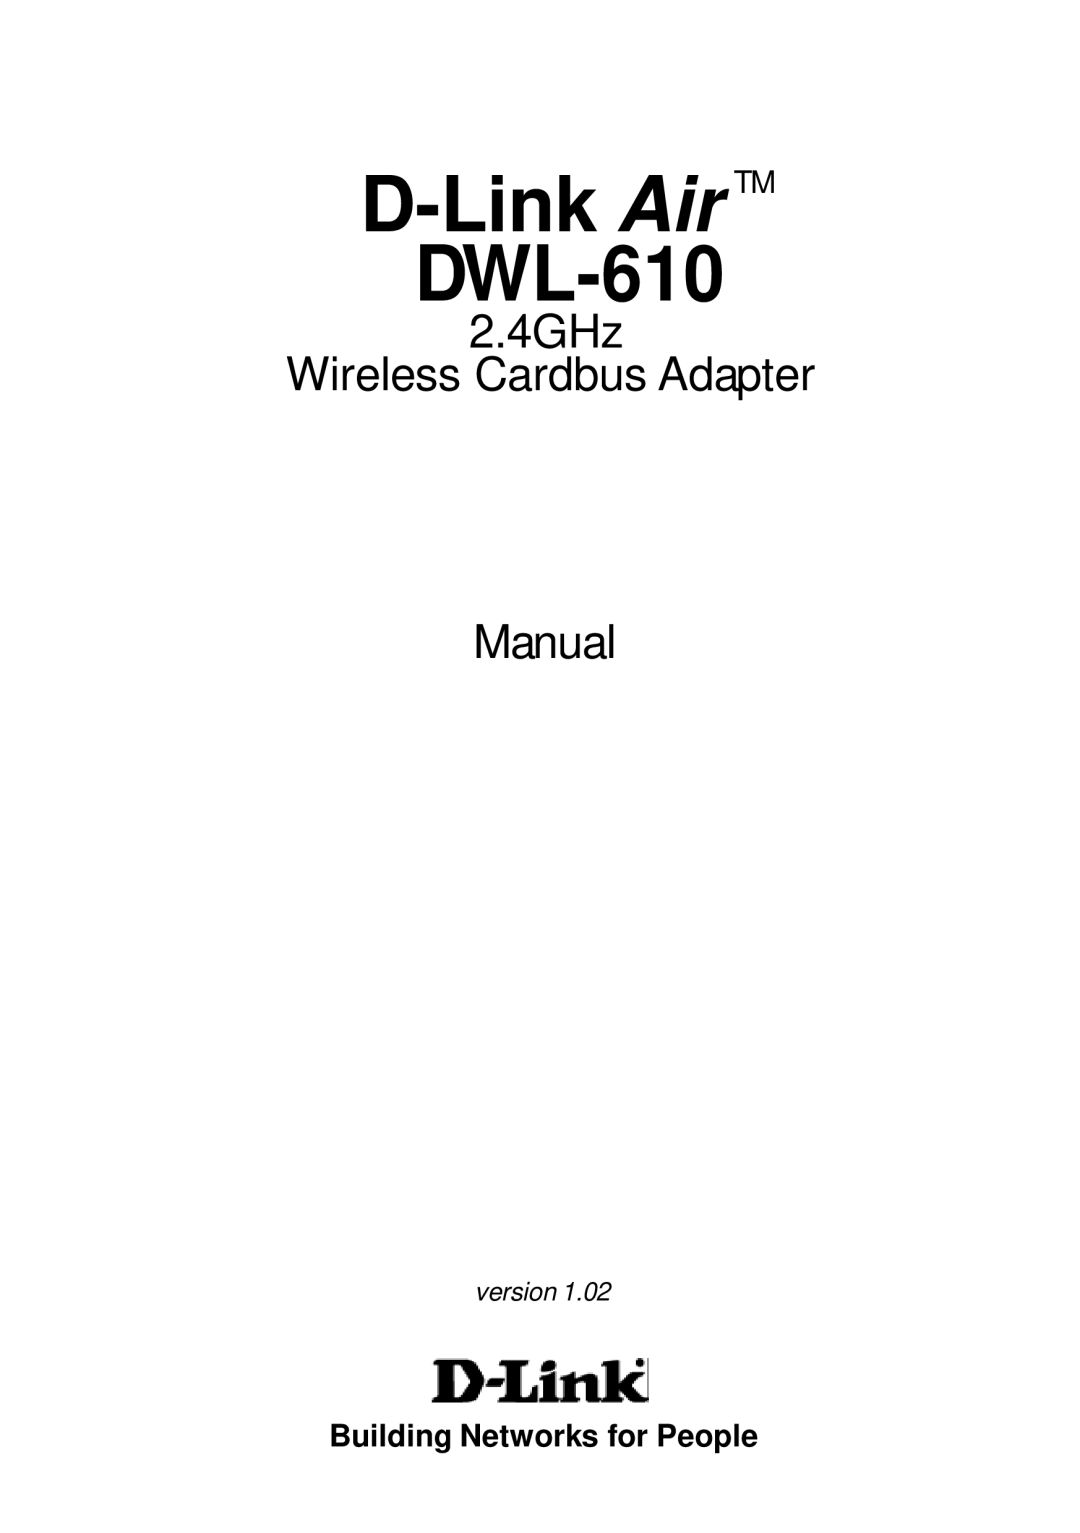 D-Link manual Link Air TM DWL-610 